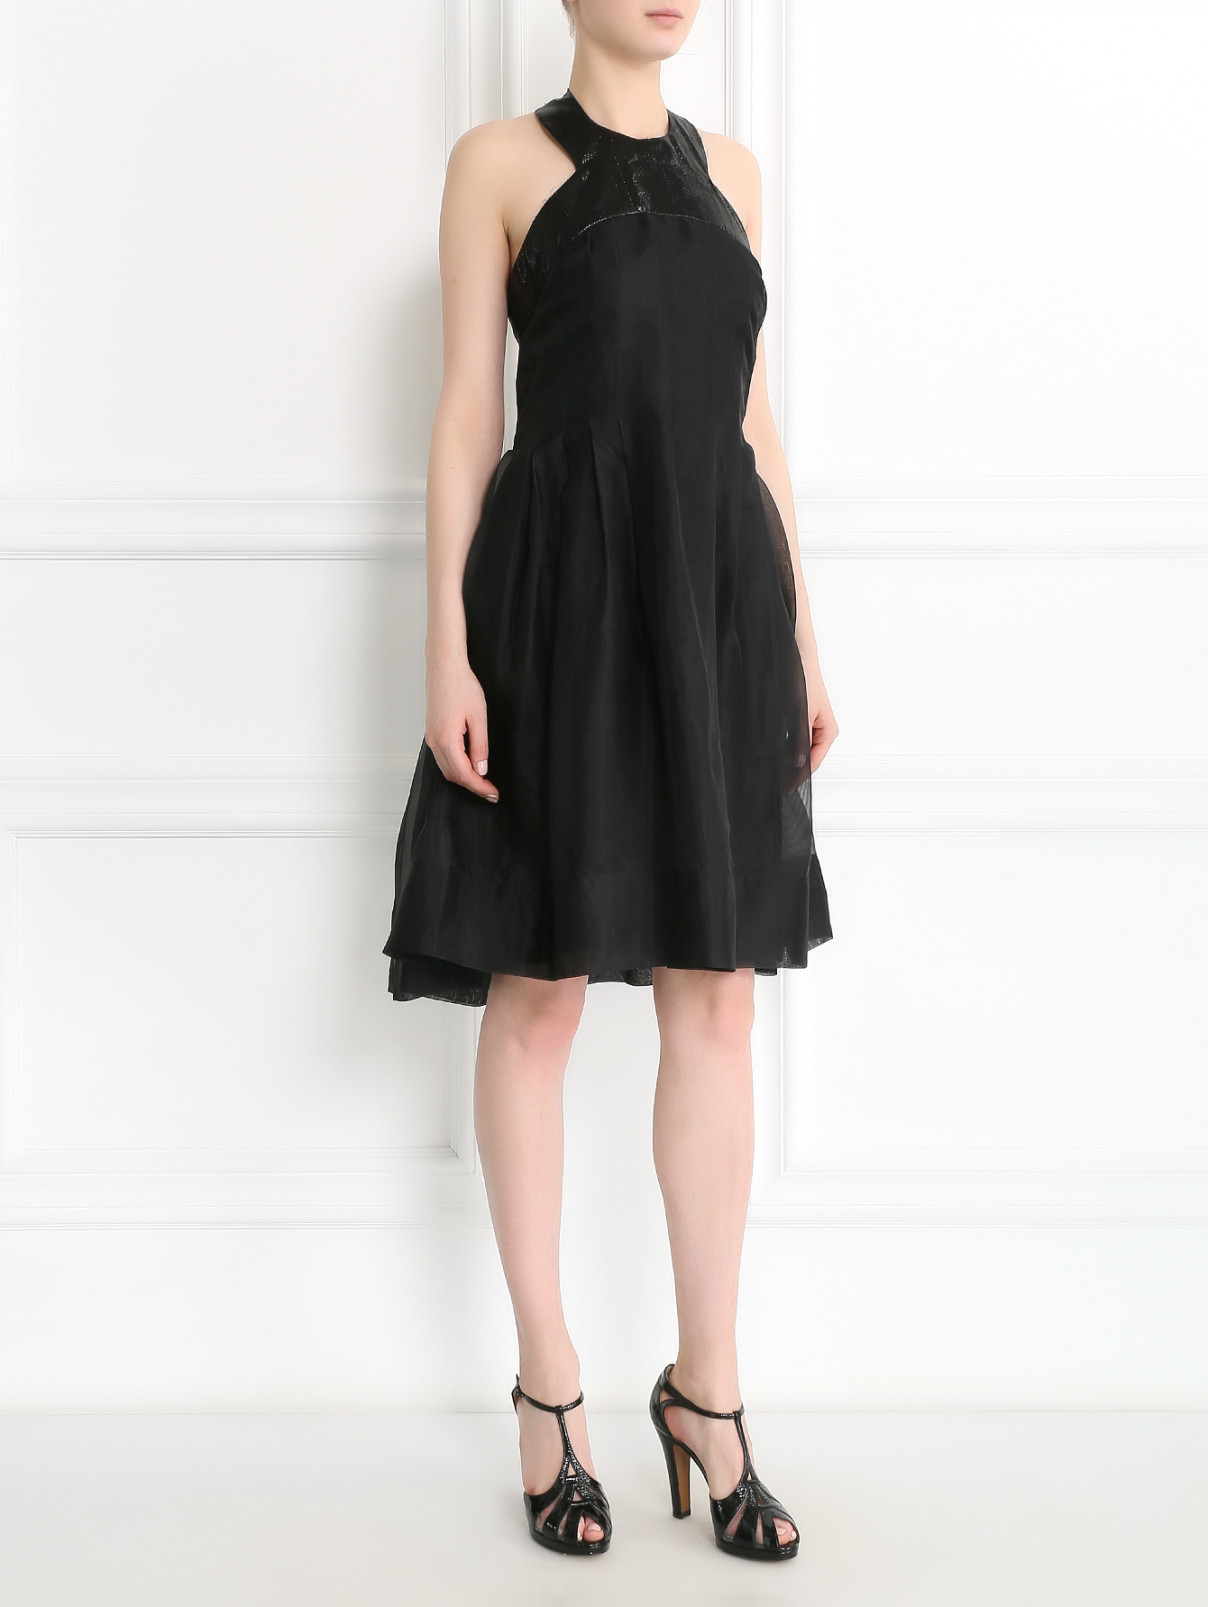 Платье из шелка Rue du Mail  –  Модель Общий вид  – Цвет:  Черный